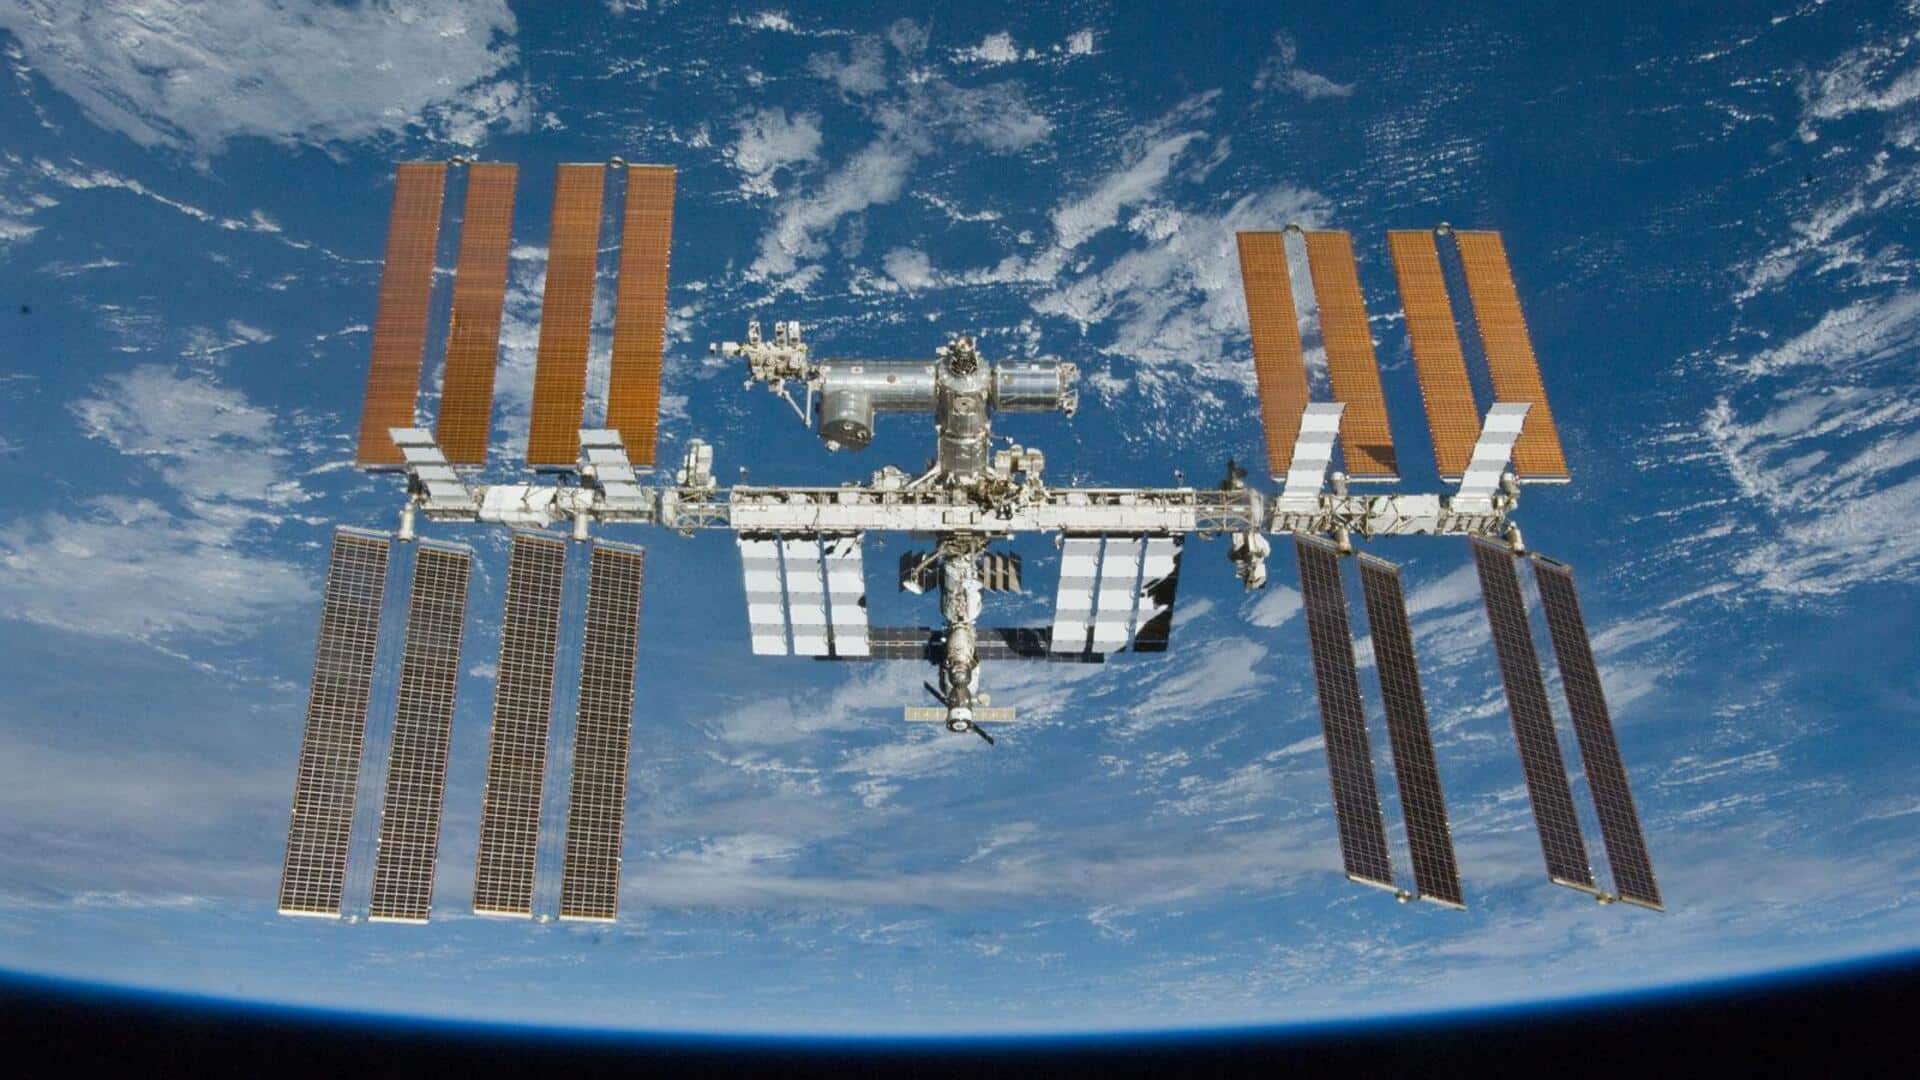 स्पेस-X बनाएगी अंतरराष्ट्रीय स्पेस स्टेशन के लिए खास वाहन, नासा ने दी जिम्मेदारी